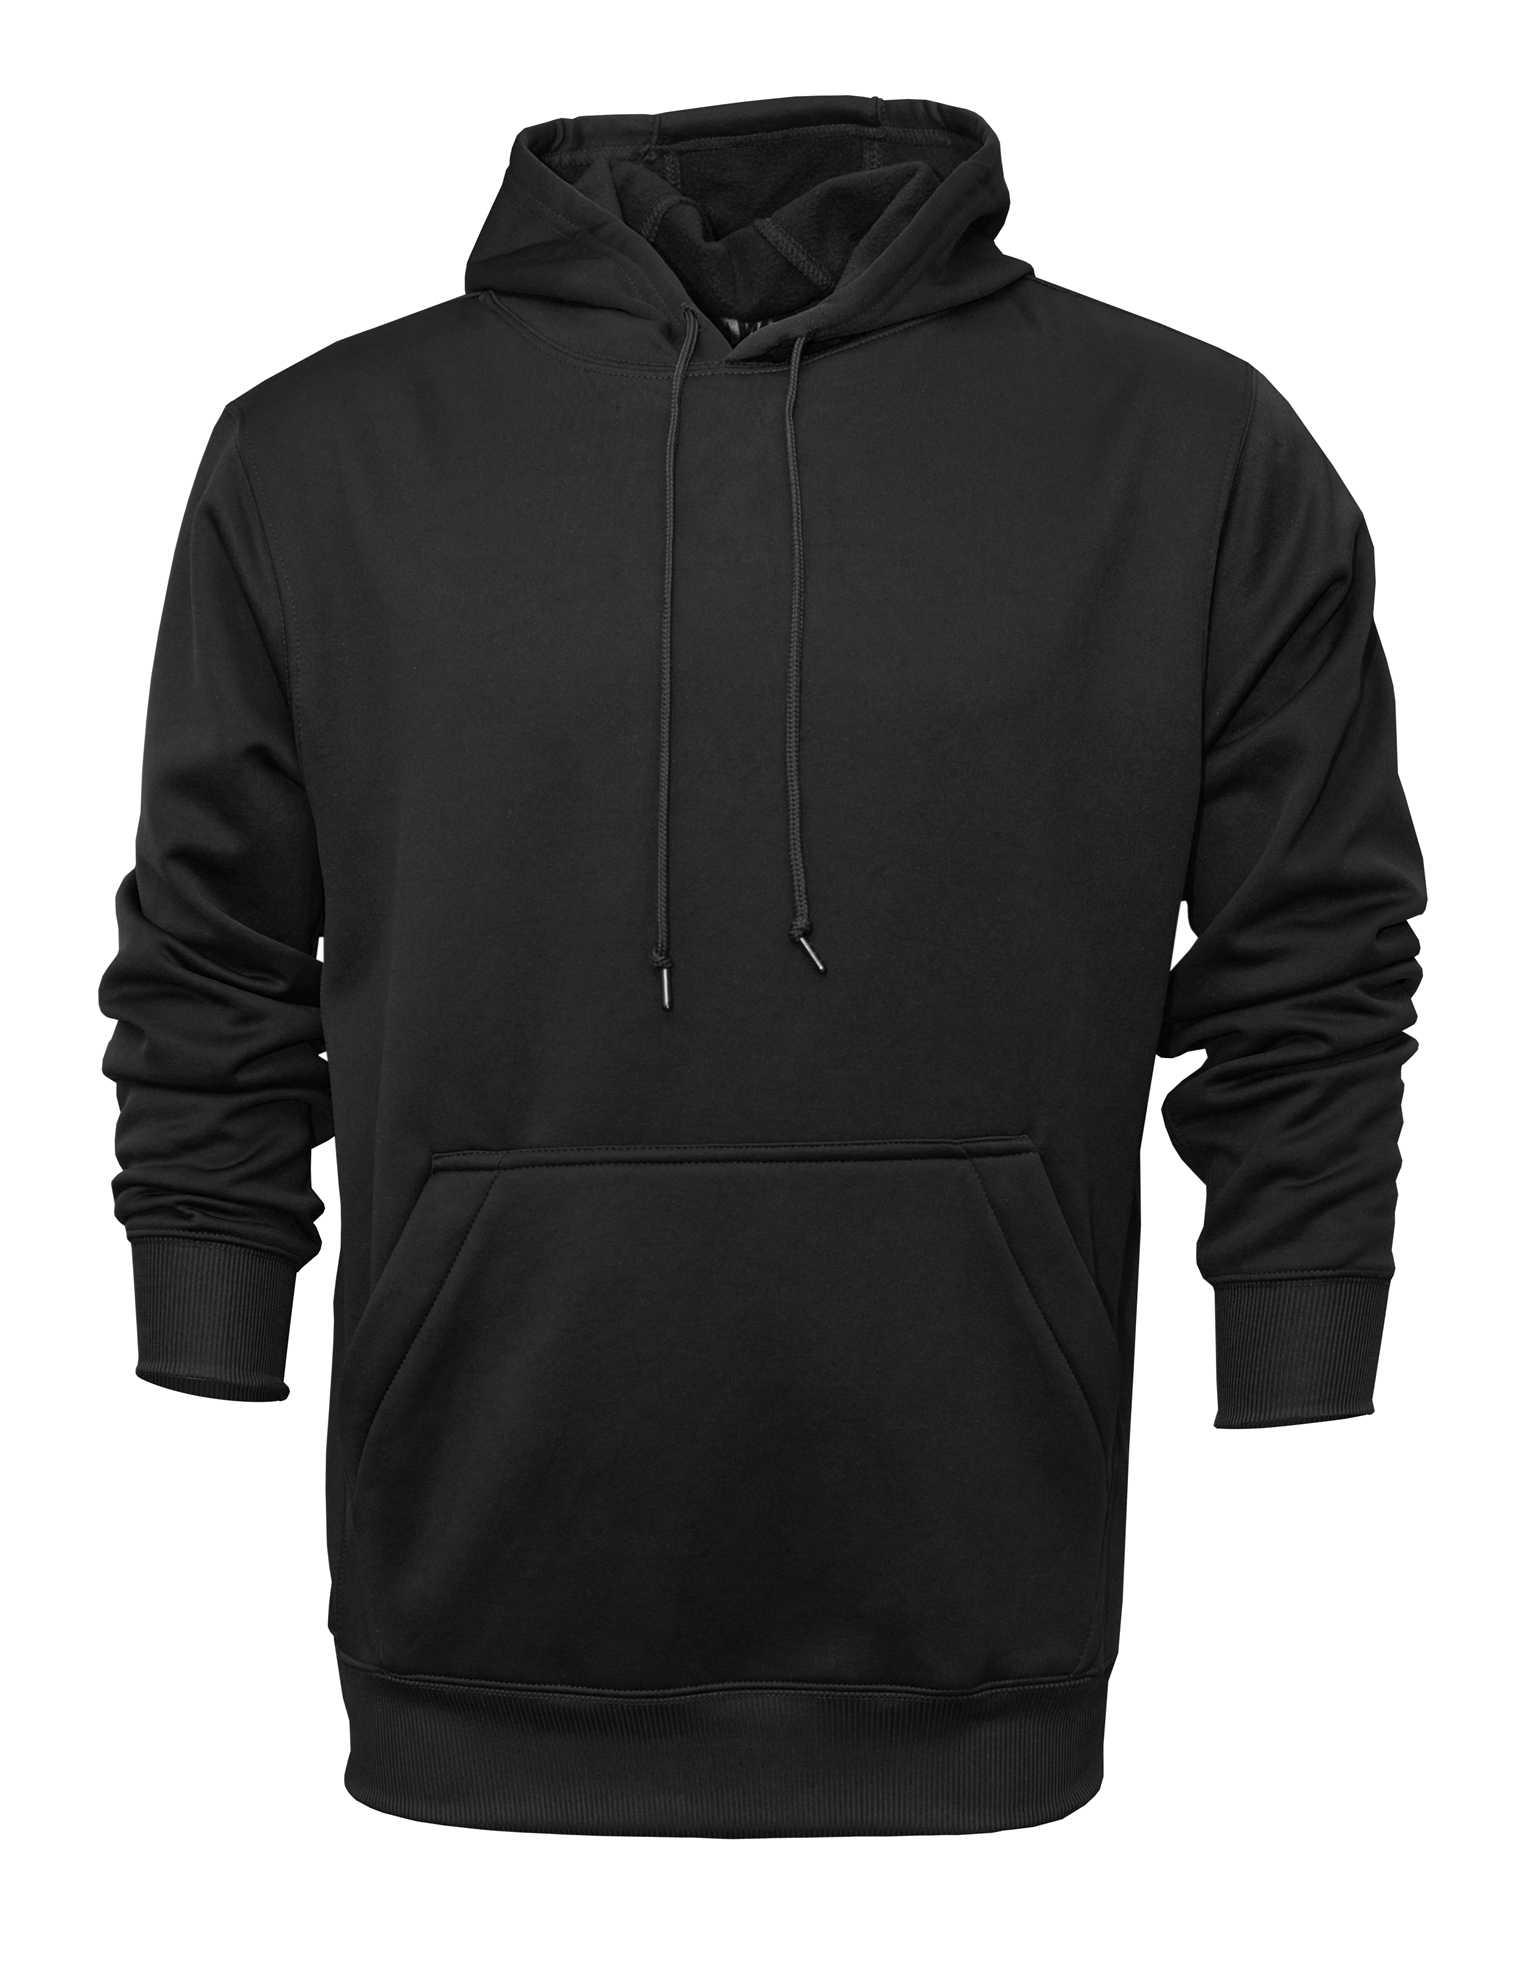 BAW Athletic Wear F150 - Men's Hooded Sweatshirt